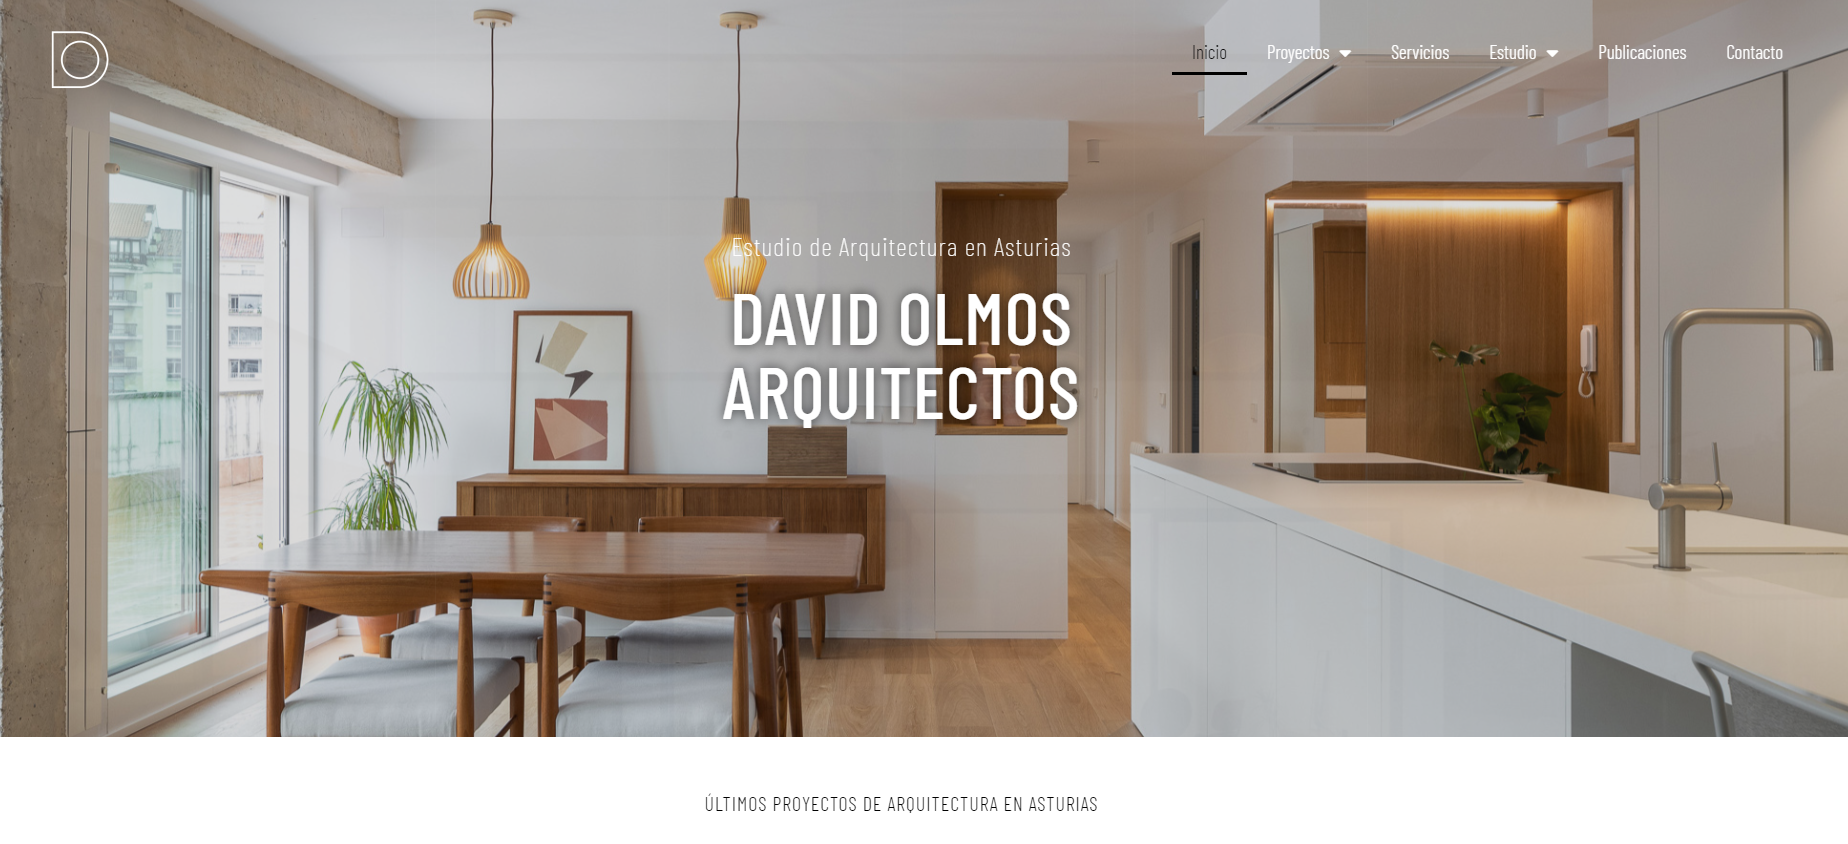 El estudio de Arquitectura David Olmos materializa y diseña casa privada como un espacio cómodo, habitable y funcional.